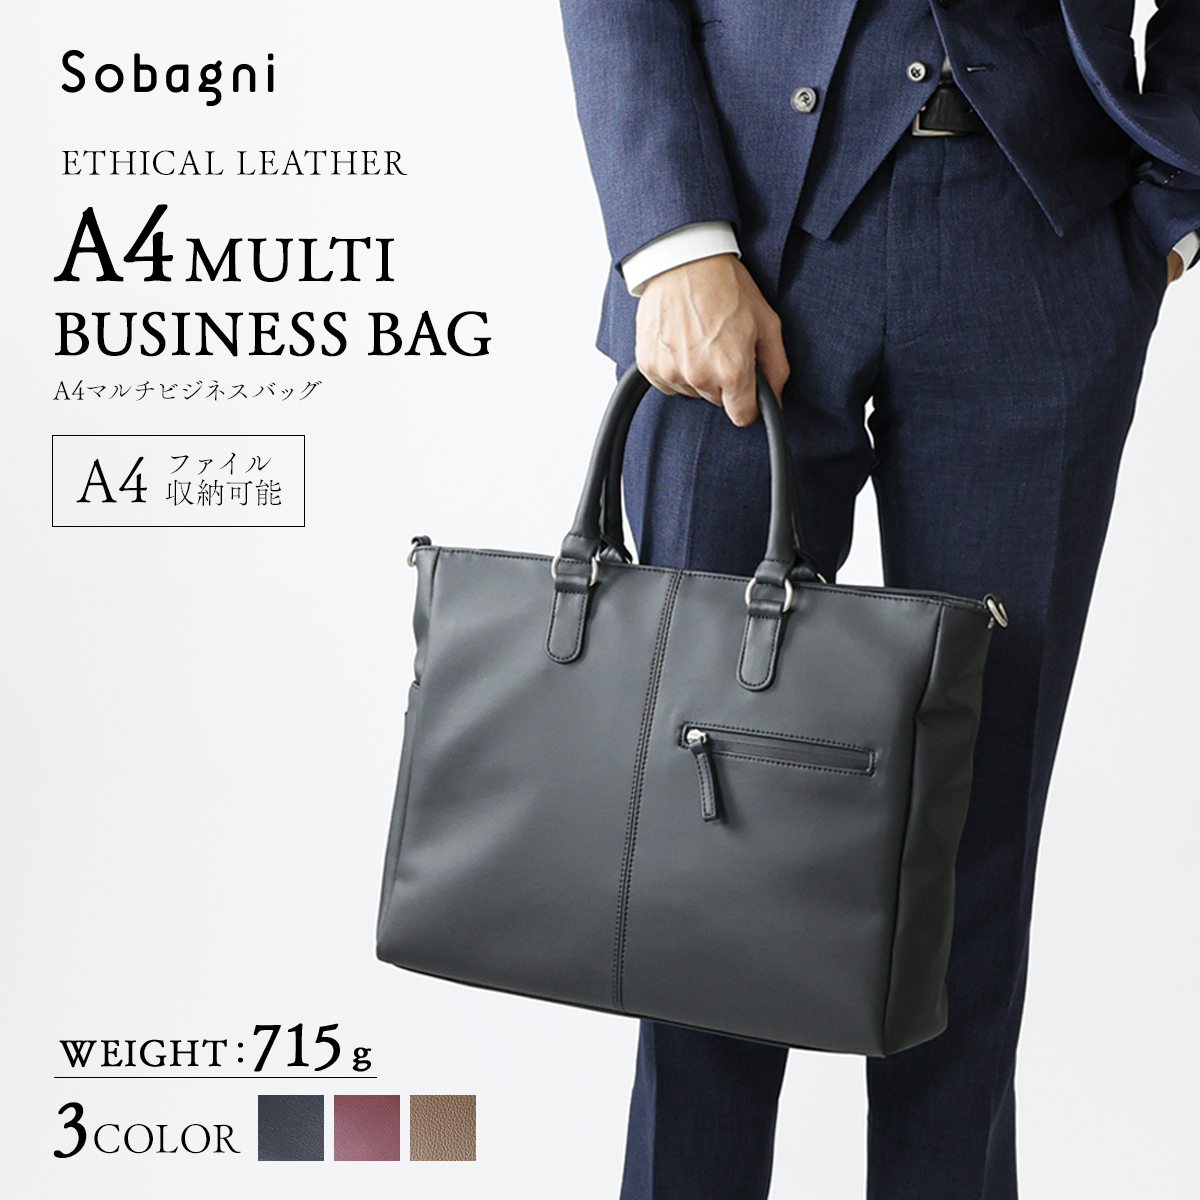 Sobagni公式 A4マルチビジネスバッグ